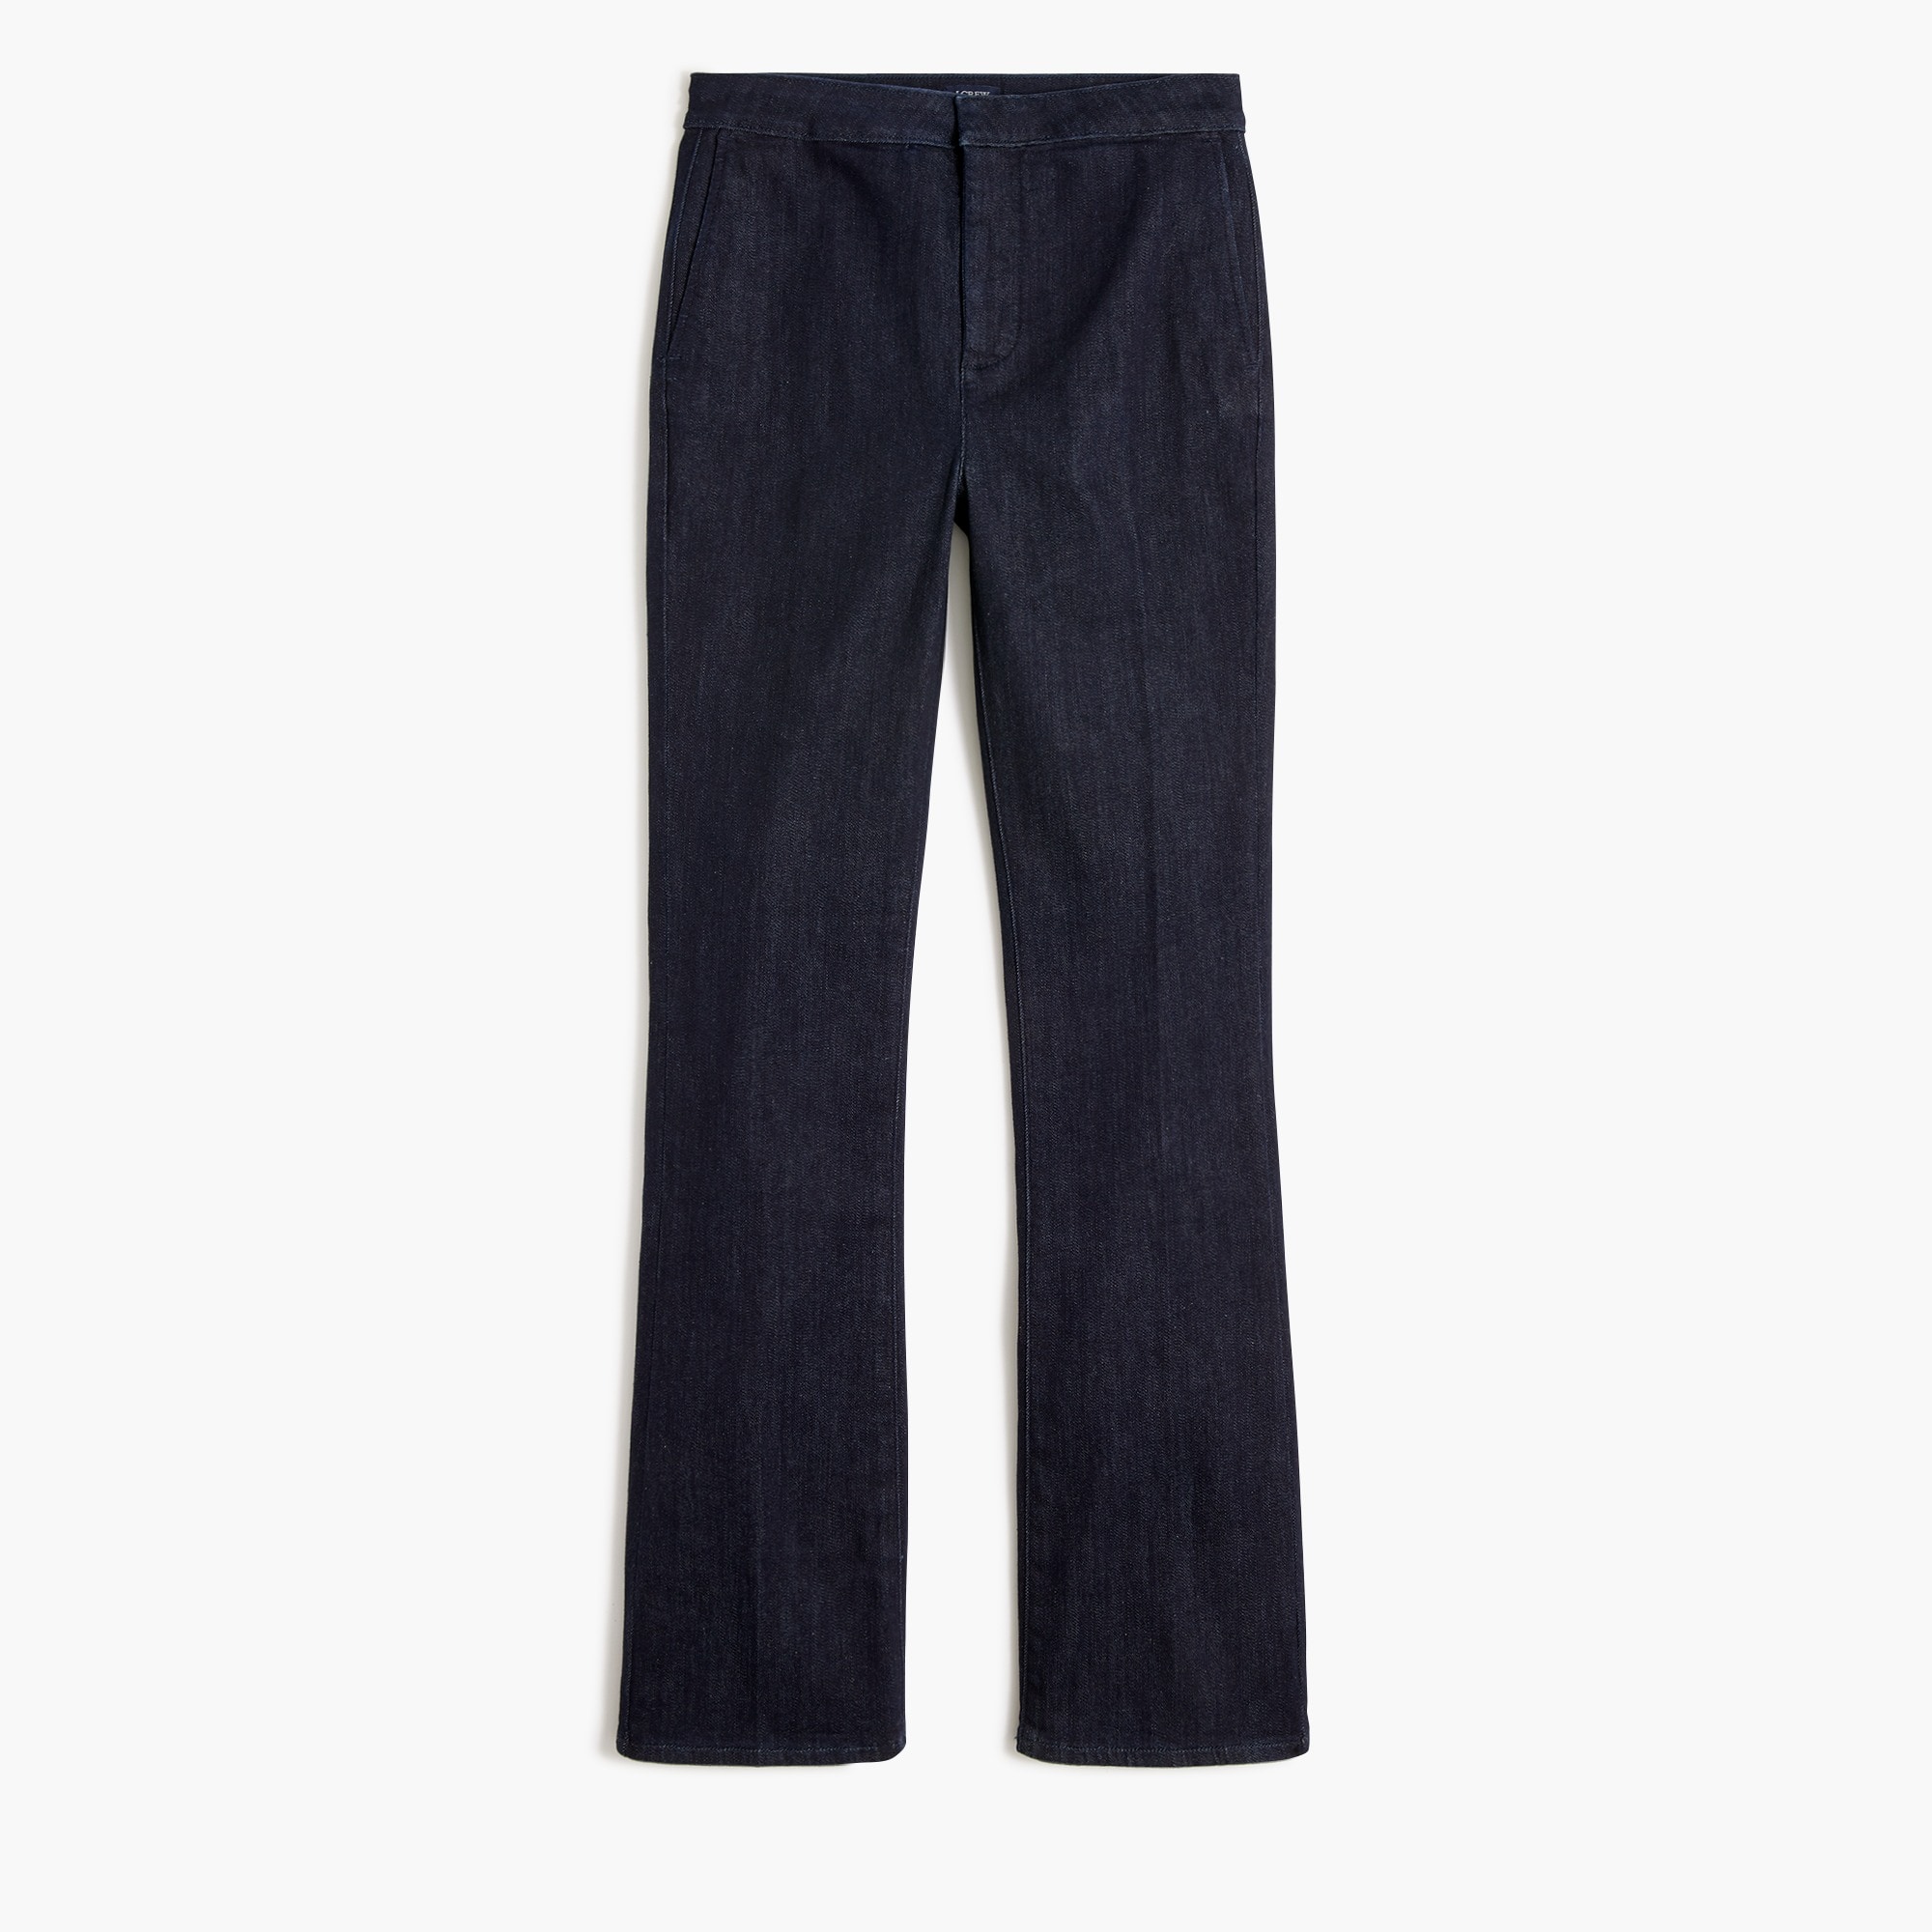  Petite trouser jean in signature stretch